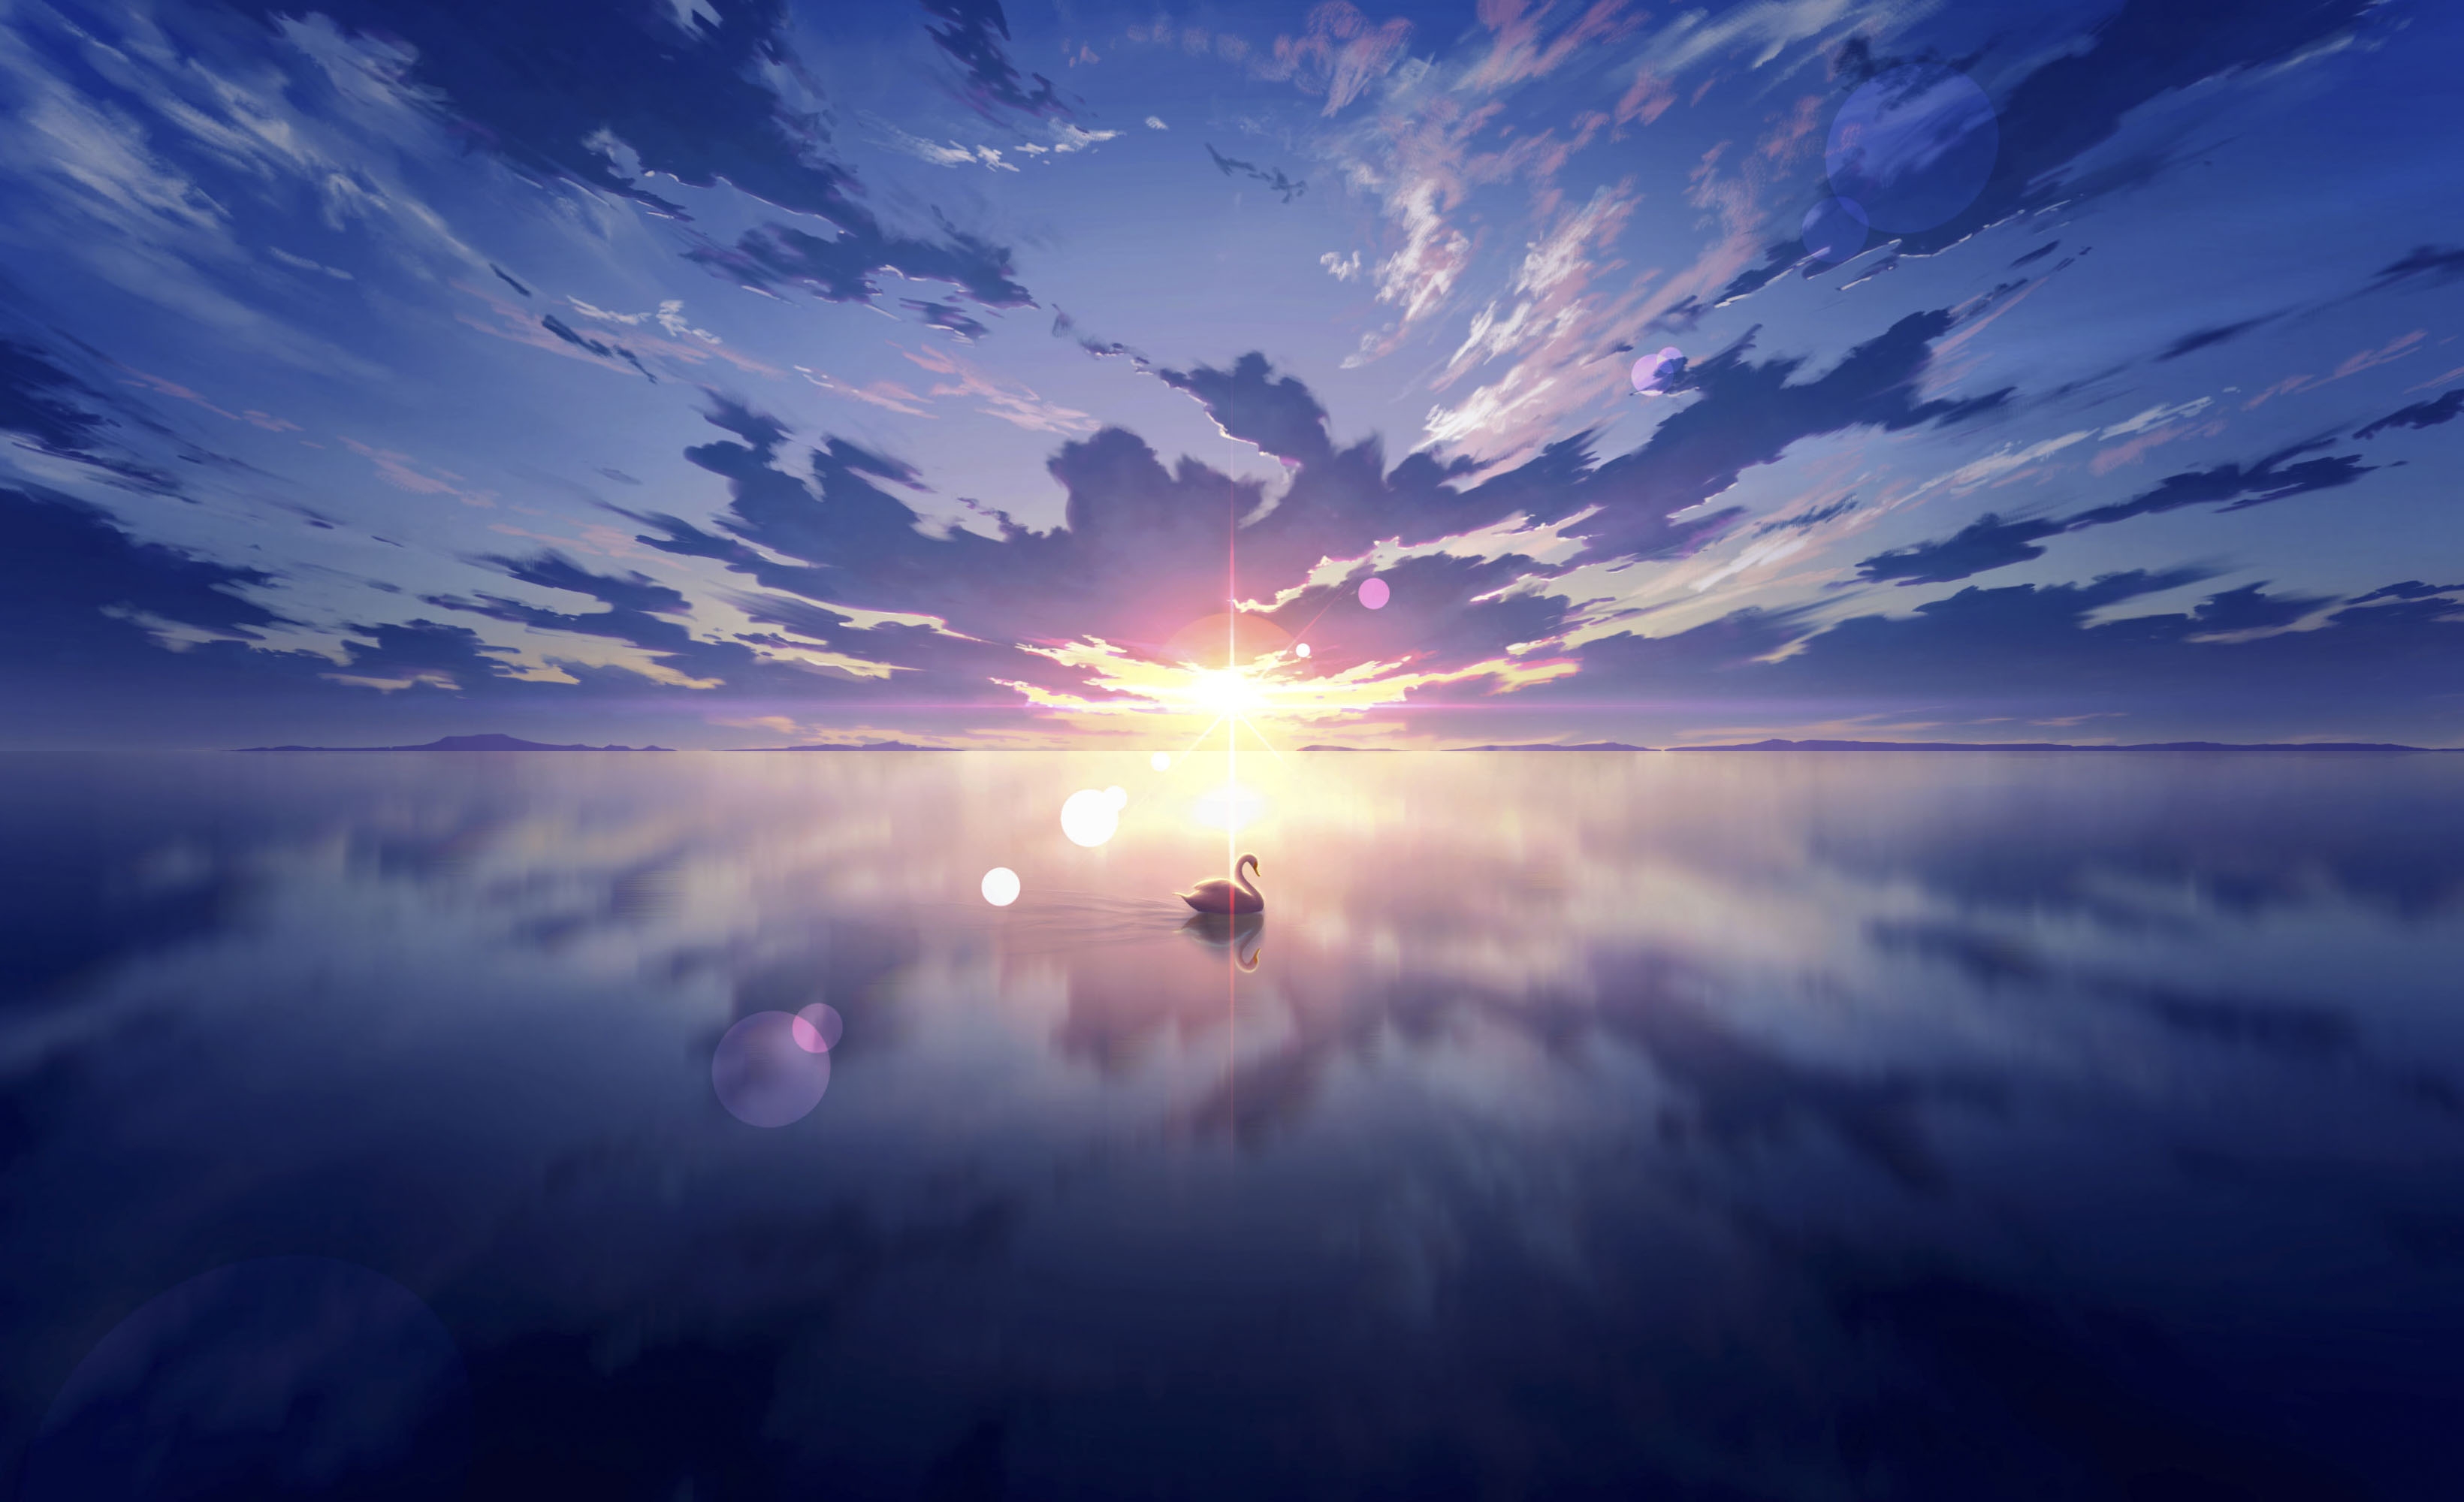 Фото бесплатно обои аниме пейзаж, за облаками, закат